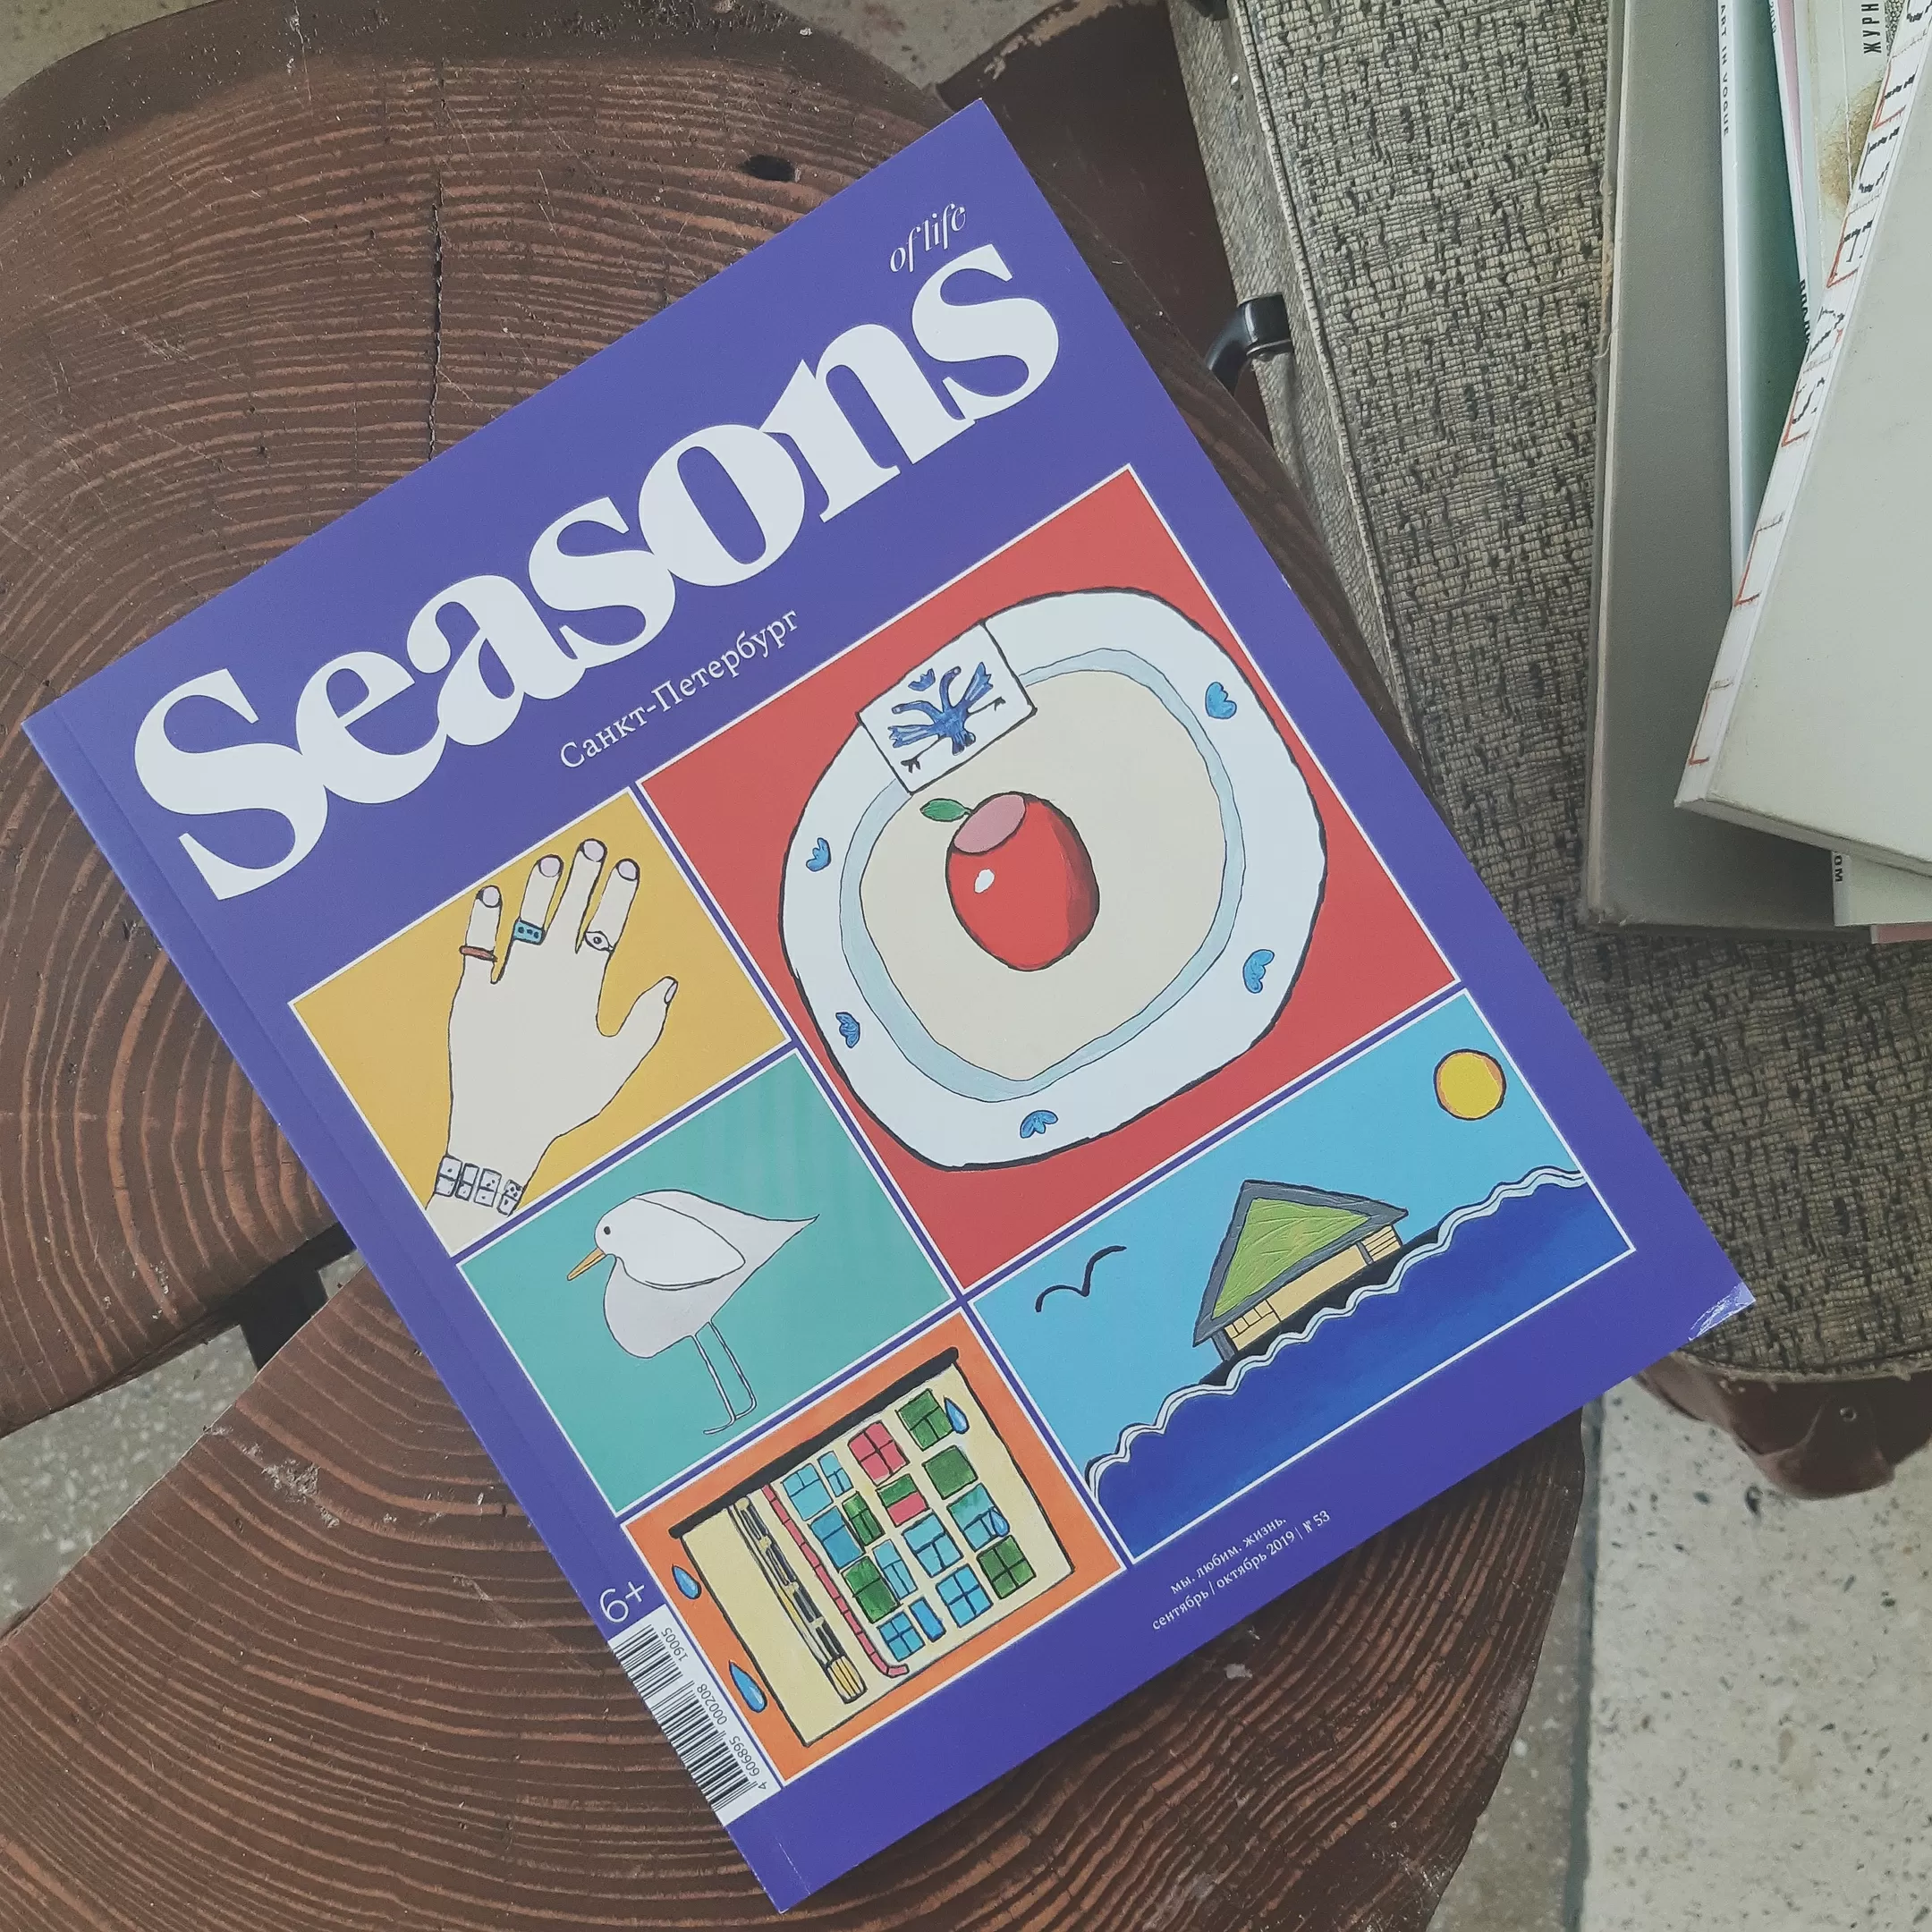 Сизонс журнал. Seasons of Life журнал. Seasons журнал обложки. Открытки в выпусках журнала Seasons of Life.. Журнал Seasons of Life 57.